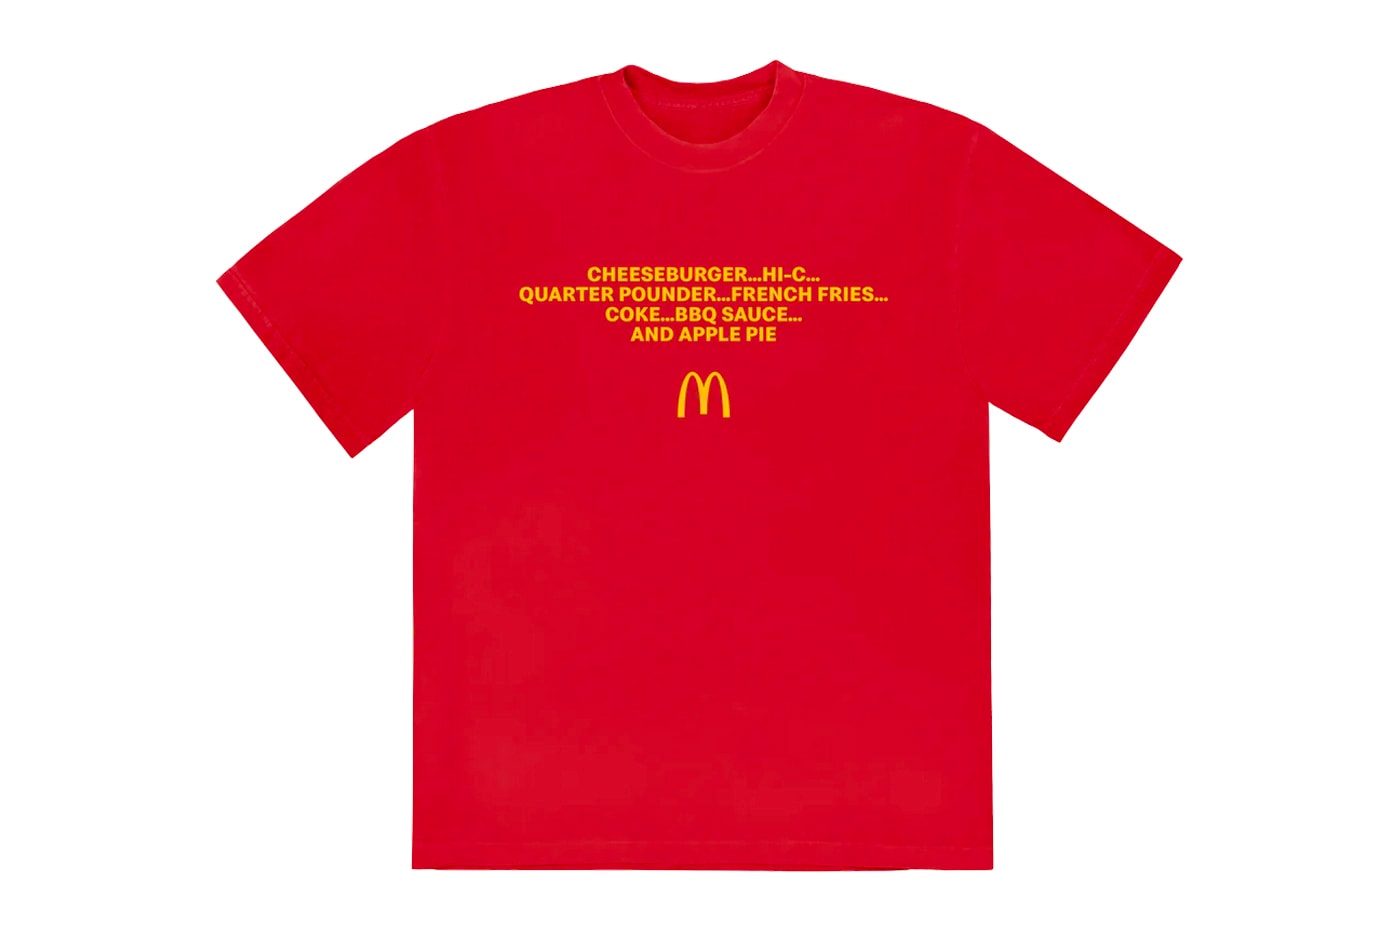 マクドナルド x カーディ・B & オフセット夫婦のコラボミールを記念したマーチコレクションが登場 McDonald's Cardi B & Offset Meal Merch Collection Release Info